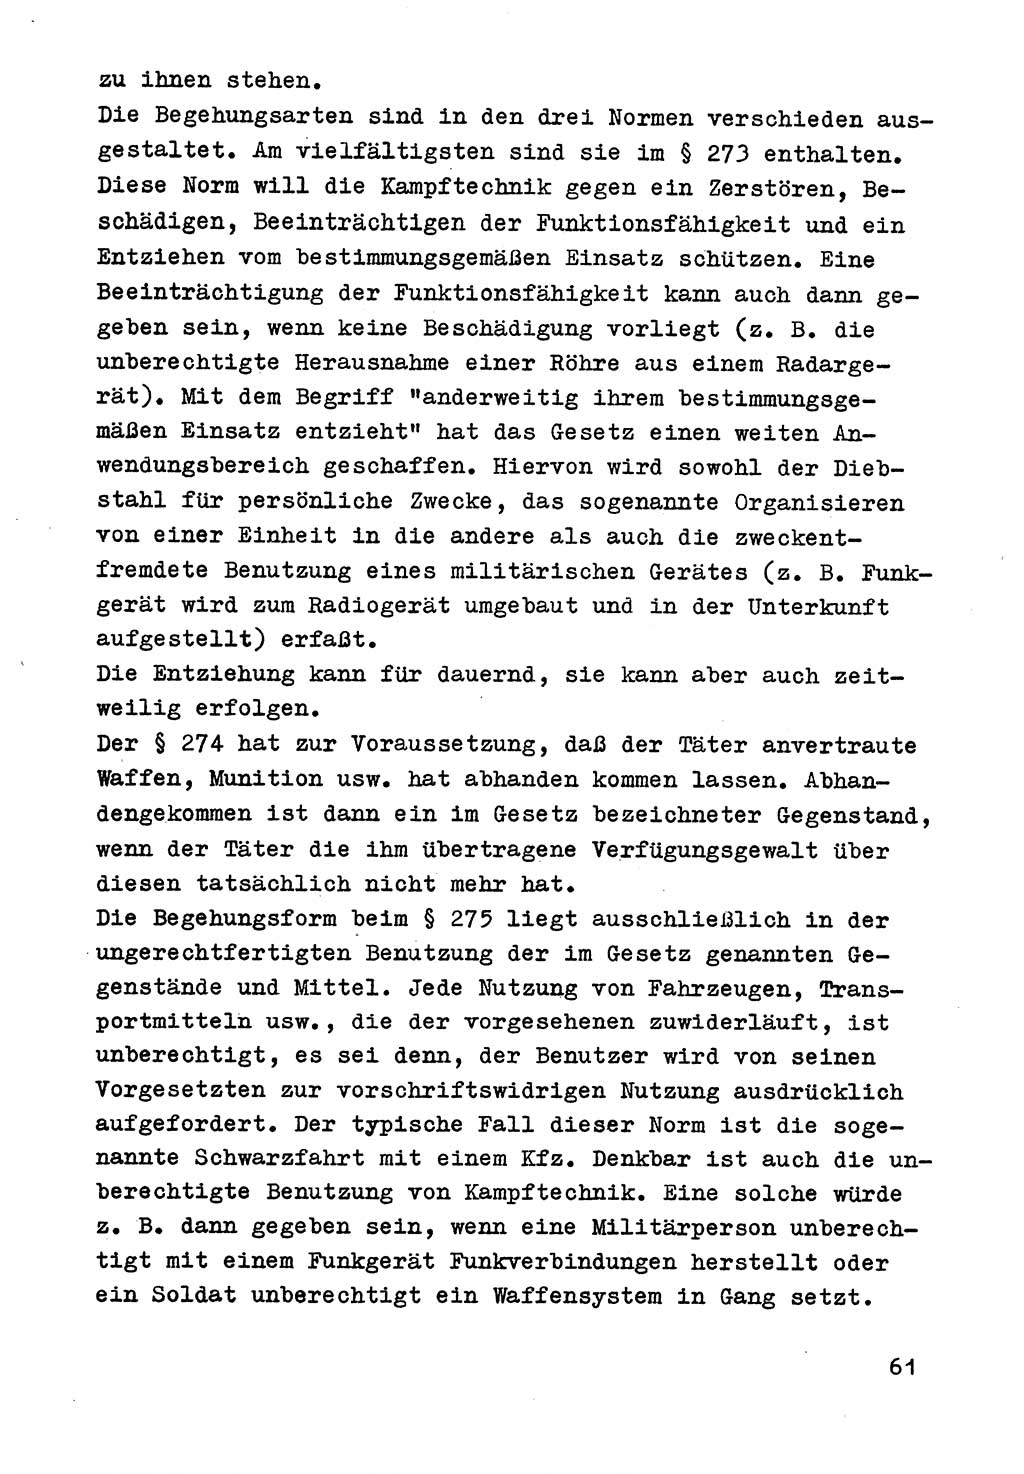 Strafrecht der DDR (Deutsche Demokratische Republik), Besonderer Teil, Lehrmaterial, Heft 9 1969, Seite 61 (Strafr. DDR BT Lehrmat. H. 9 1969, S. 61)